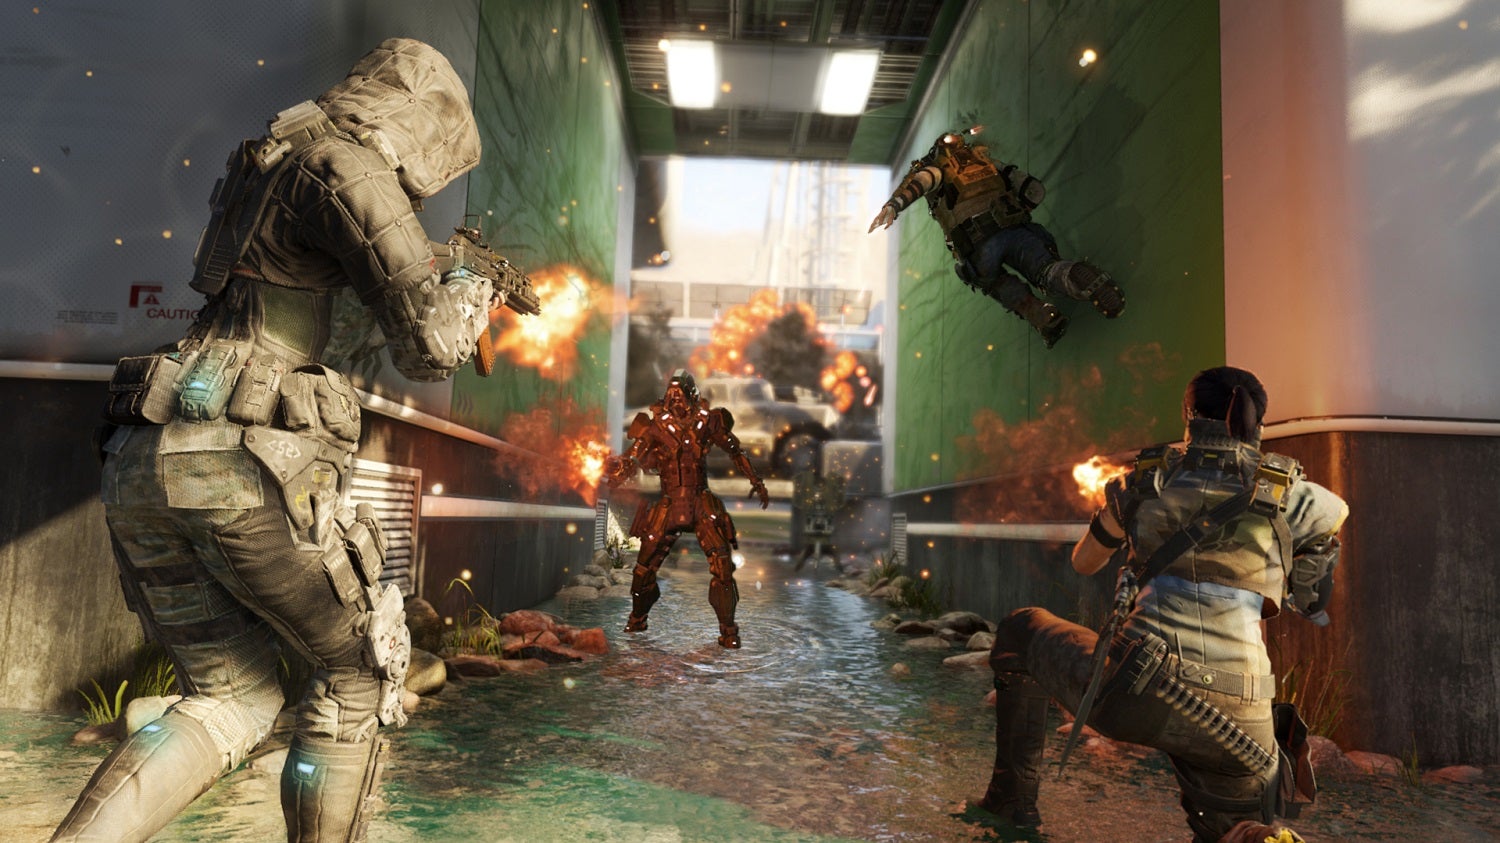 Obrazki dla Tańsza edycja Call of Duty: Black Ops 3 zawiera tylko tryb sieciowy